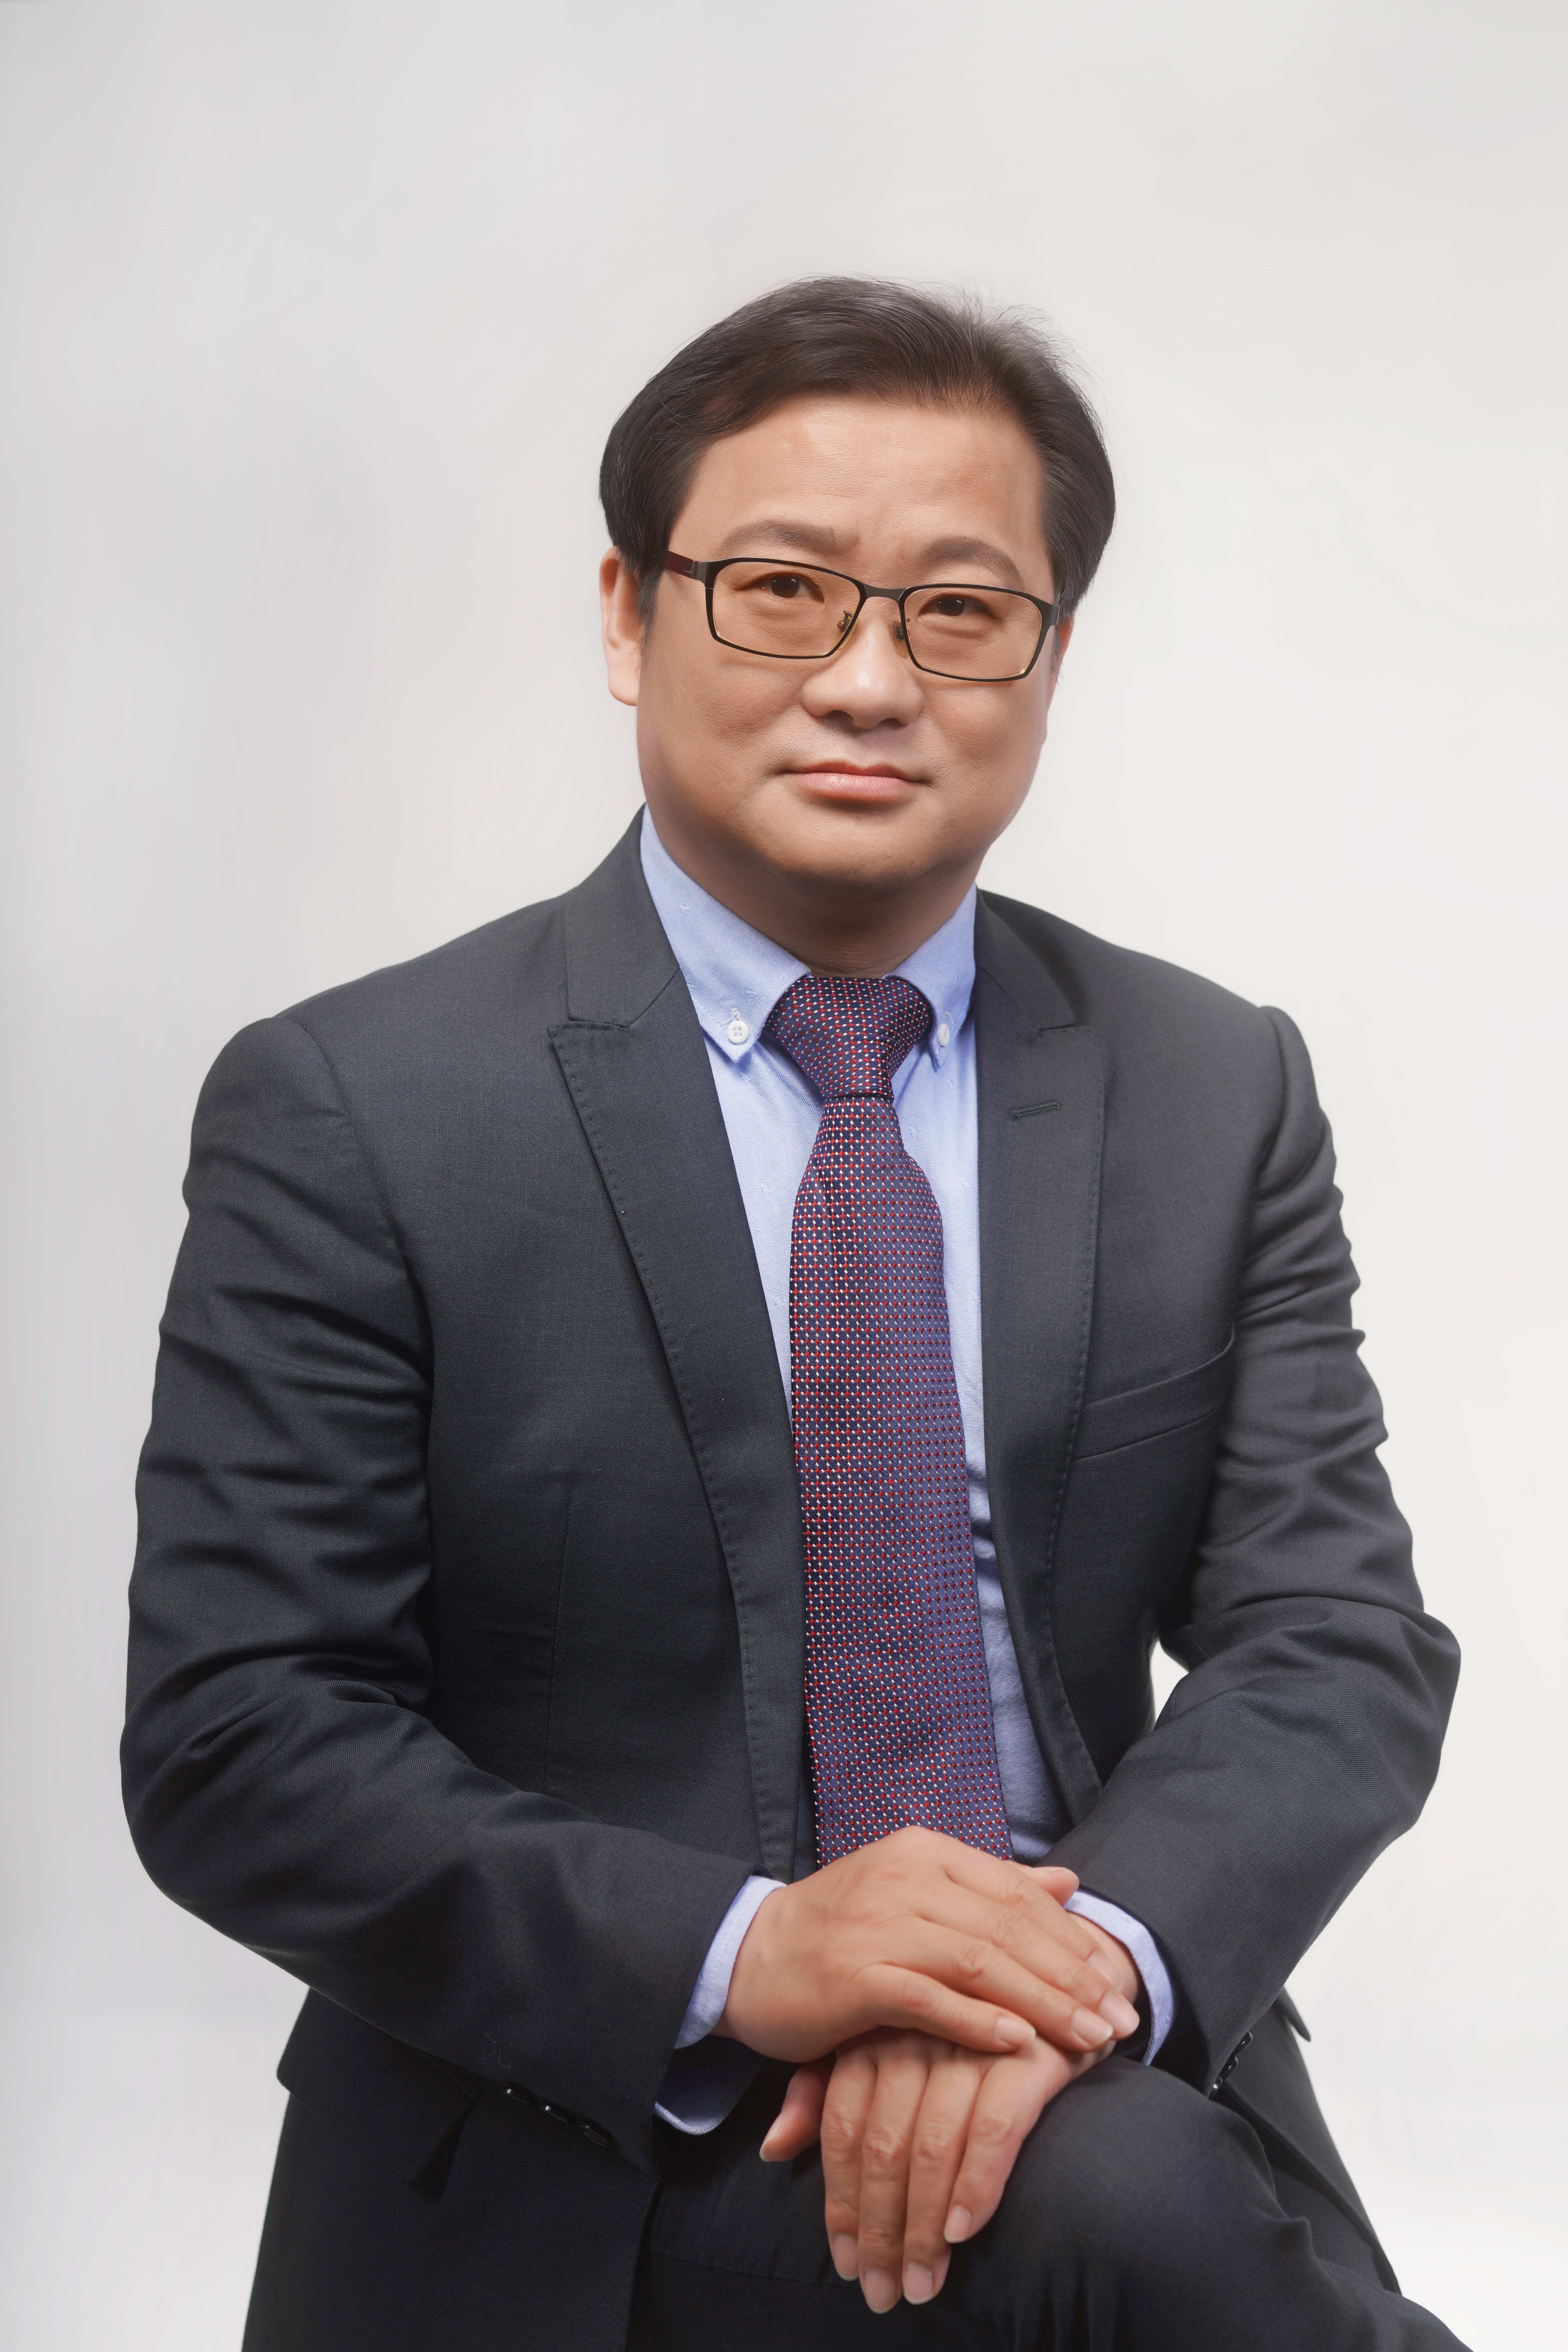 Prof. Aiwen Lei